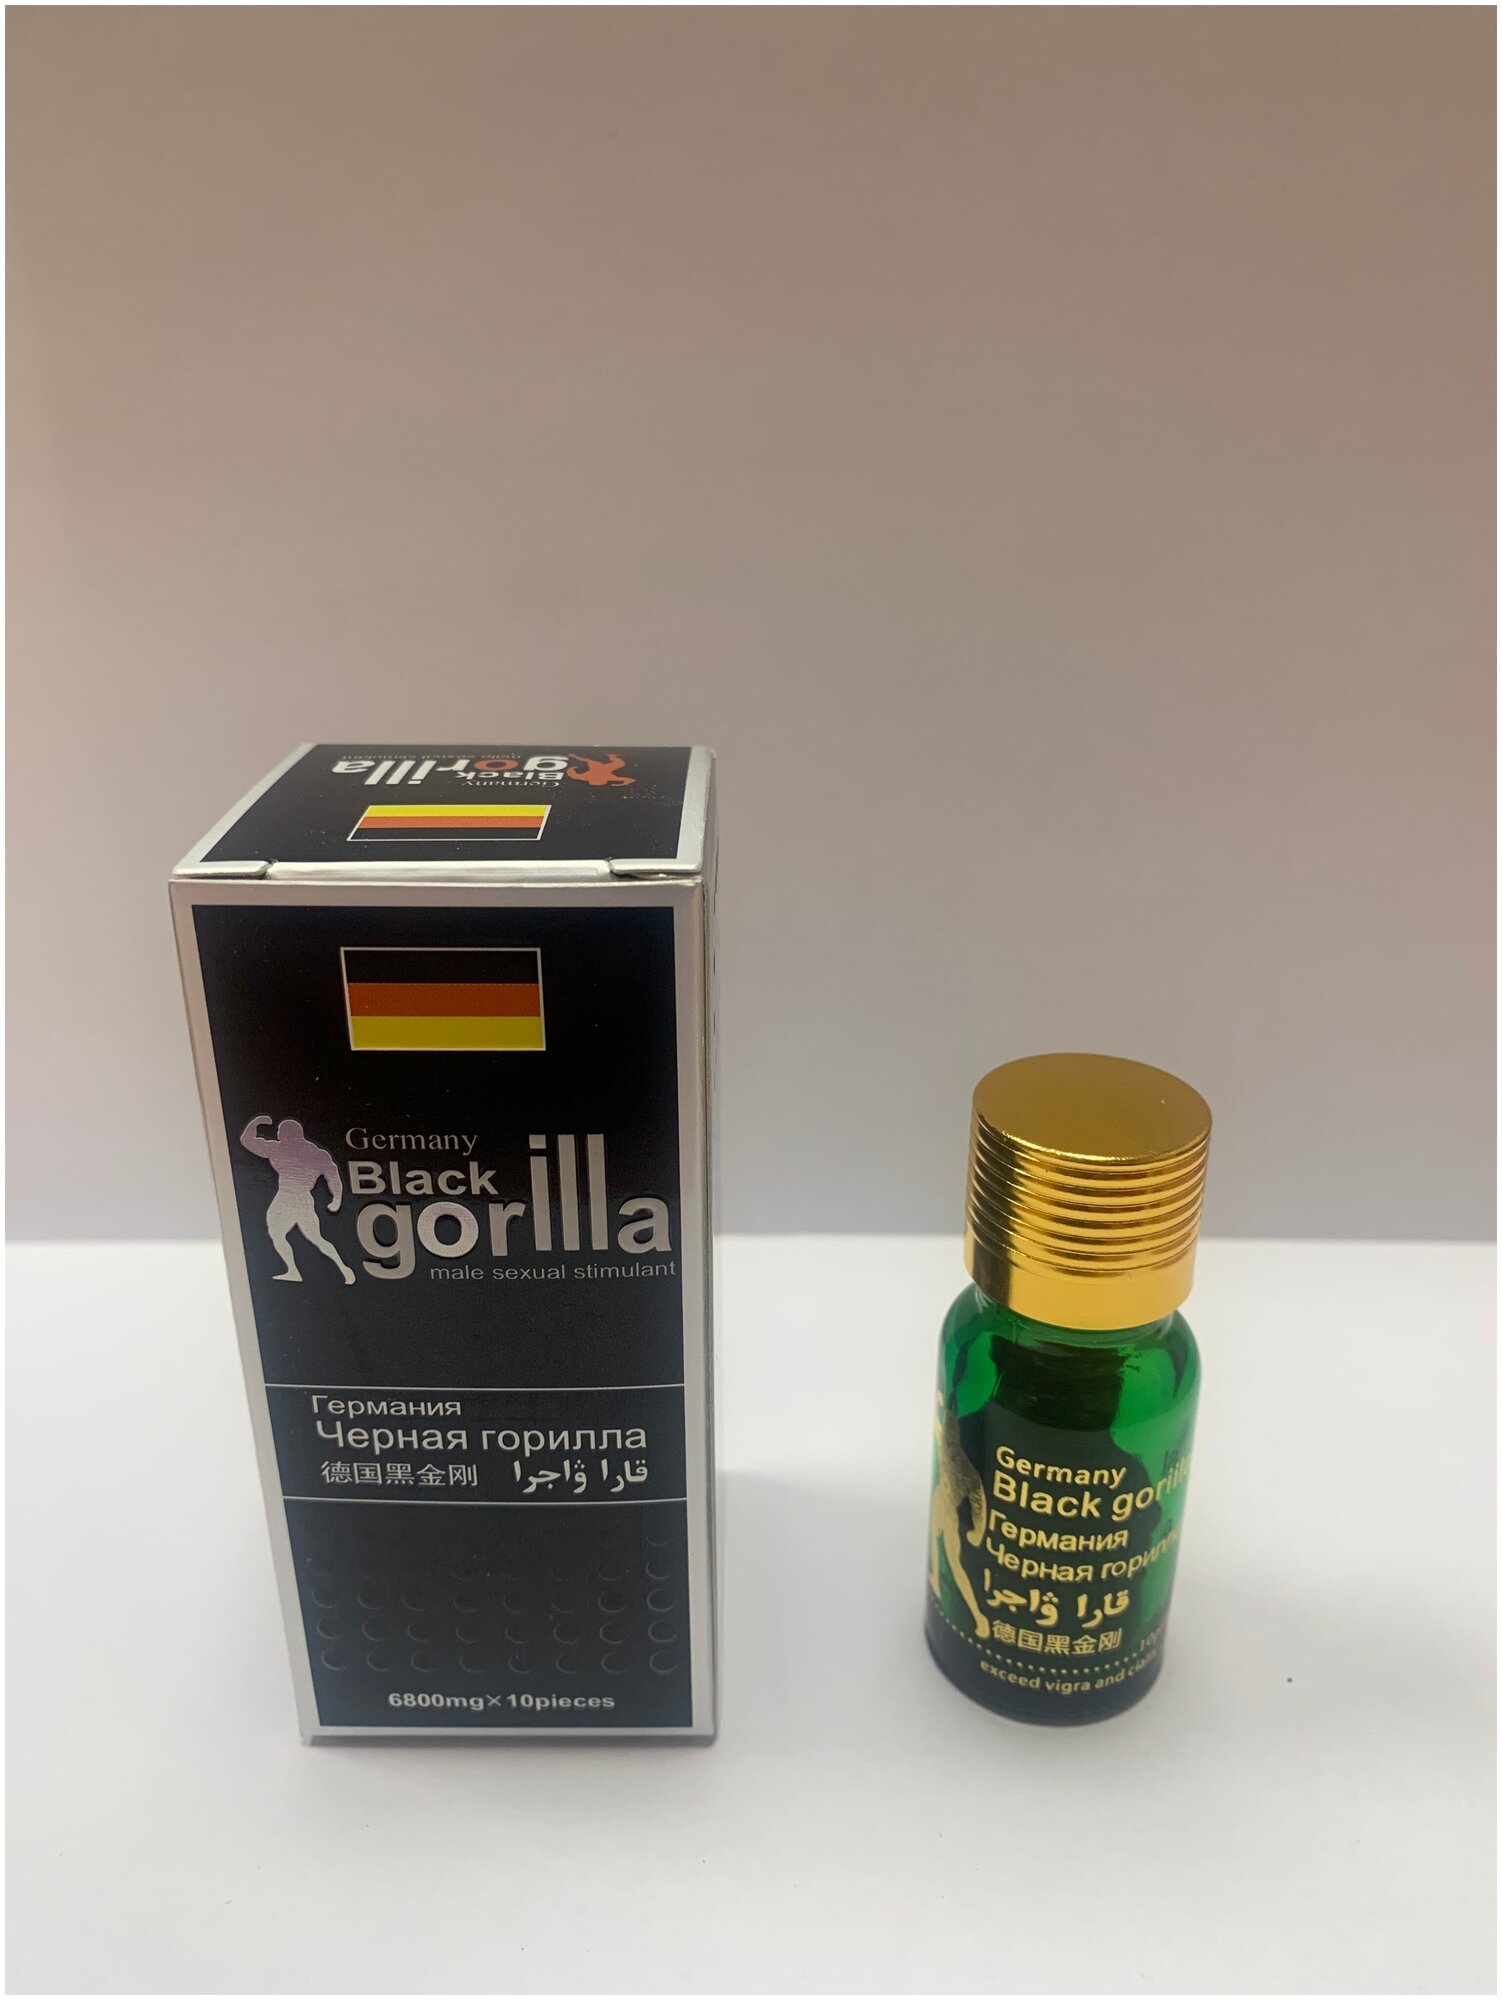 Черная Горилла Black Gorilla, таблетки для усиления потенции, мощный афродизиак, мужской возбудитель (10 таблеток)